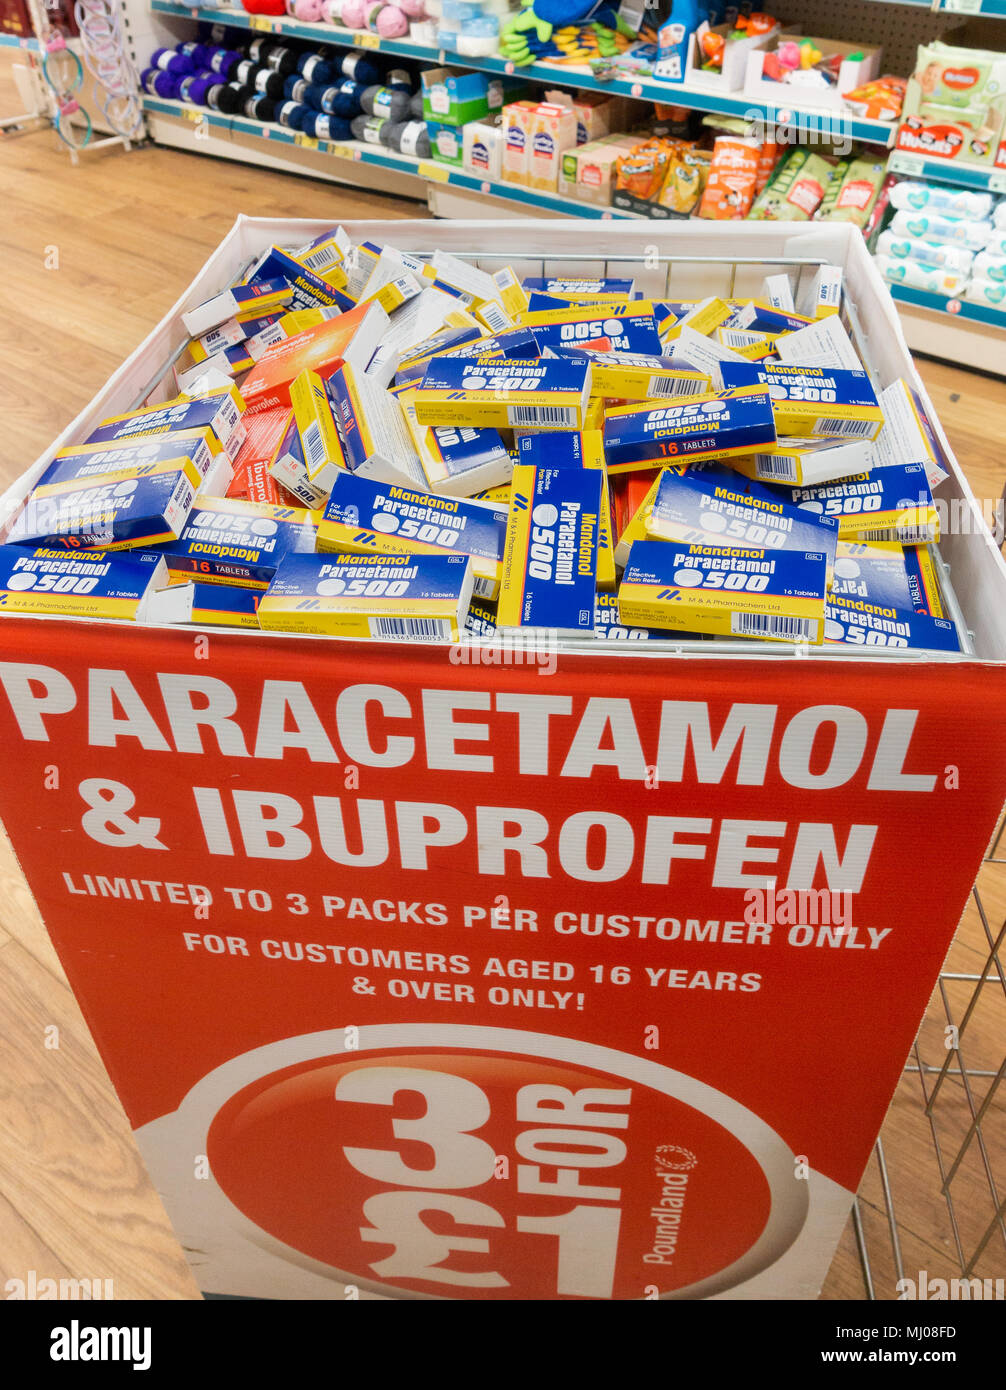 Paracetamol ibuprofen immagini e fotografie stock ad alta risoluzione -  Alamy